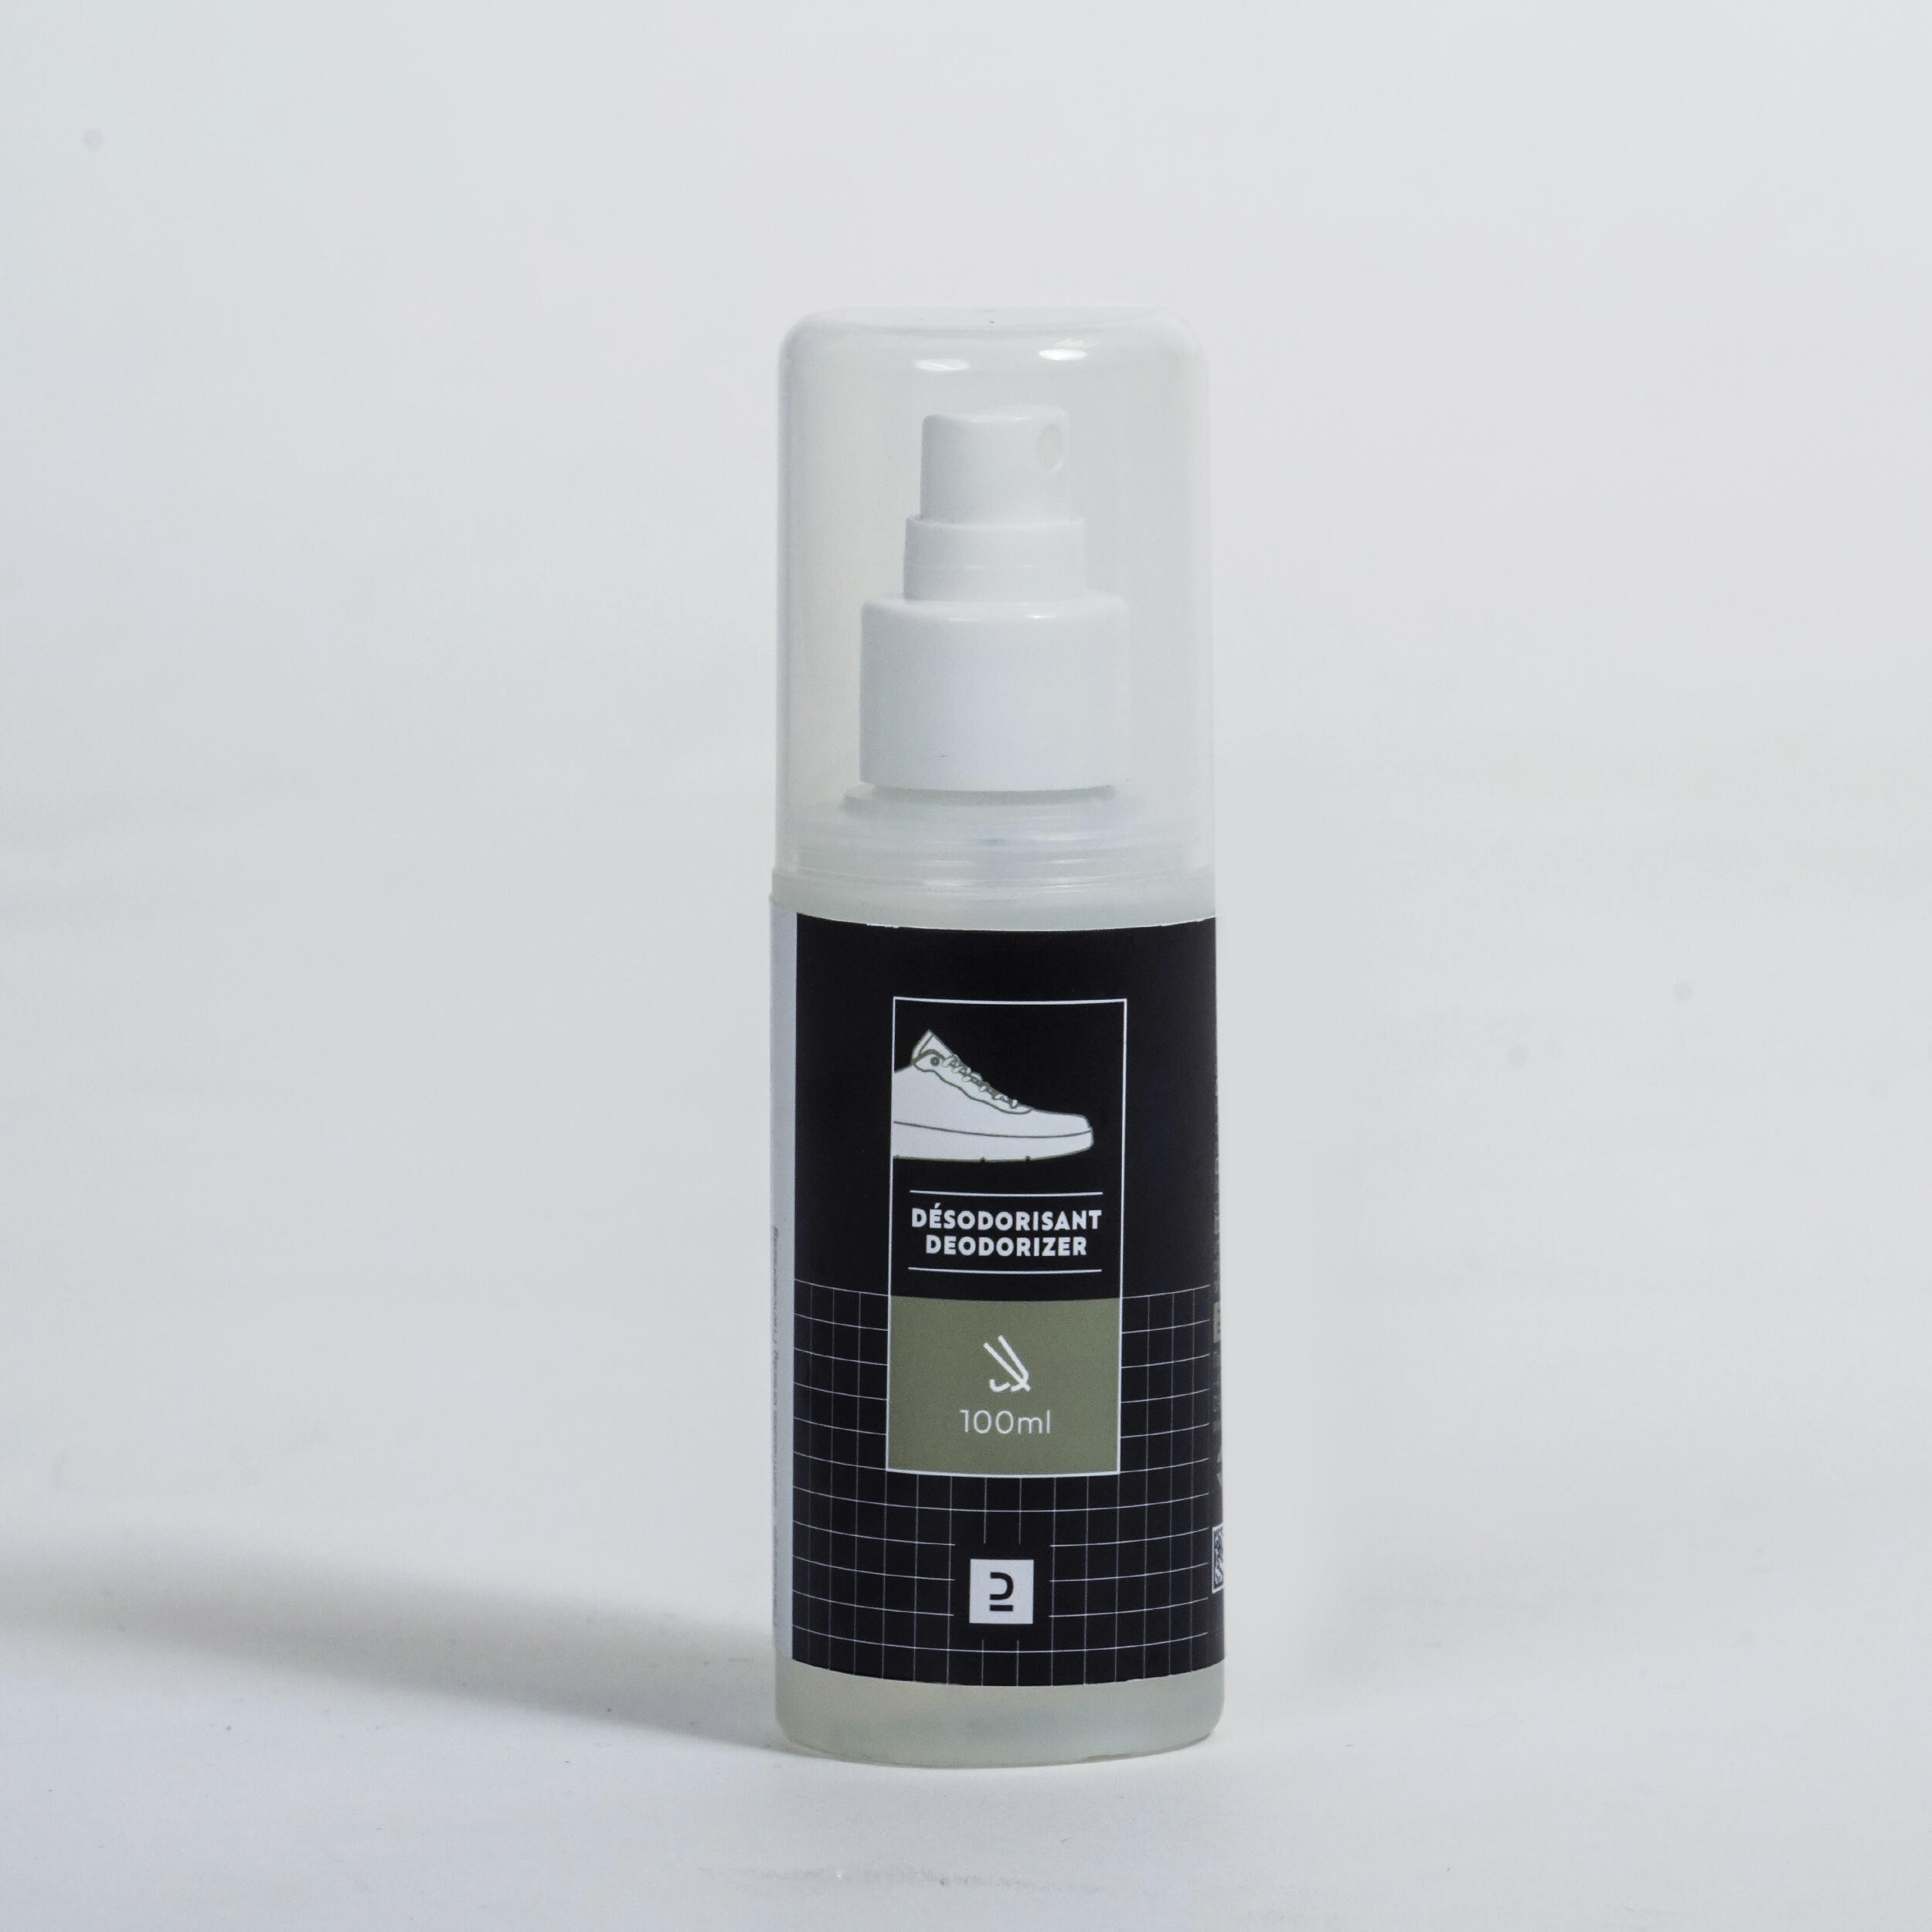 Odour neutraliser 100mL - deodorant spray 1/3